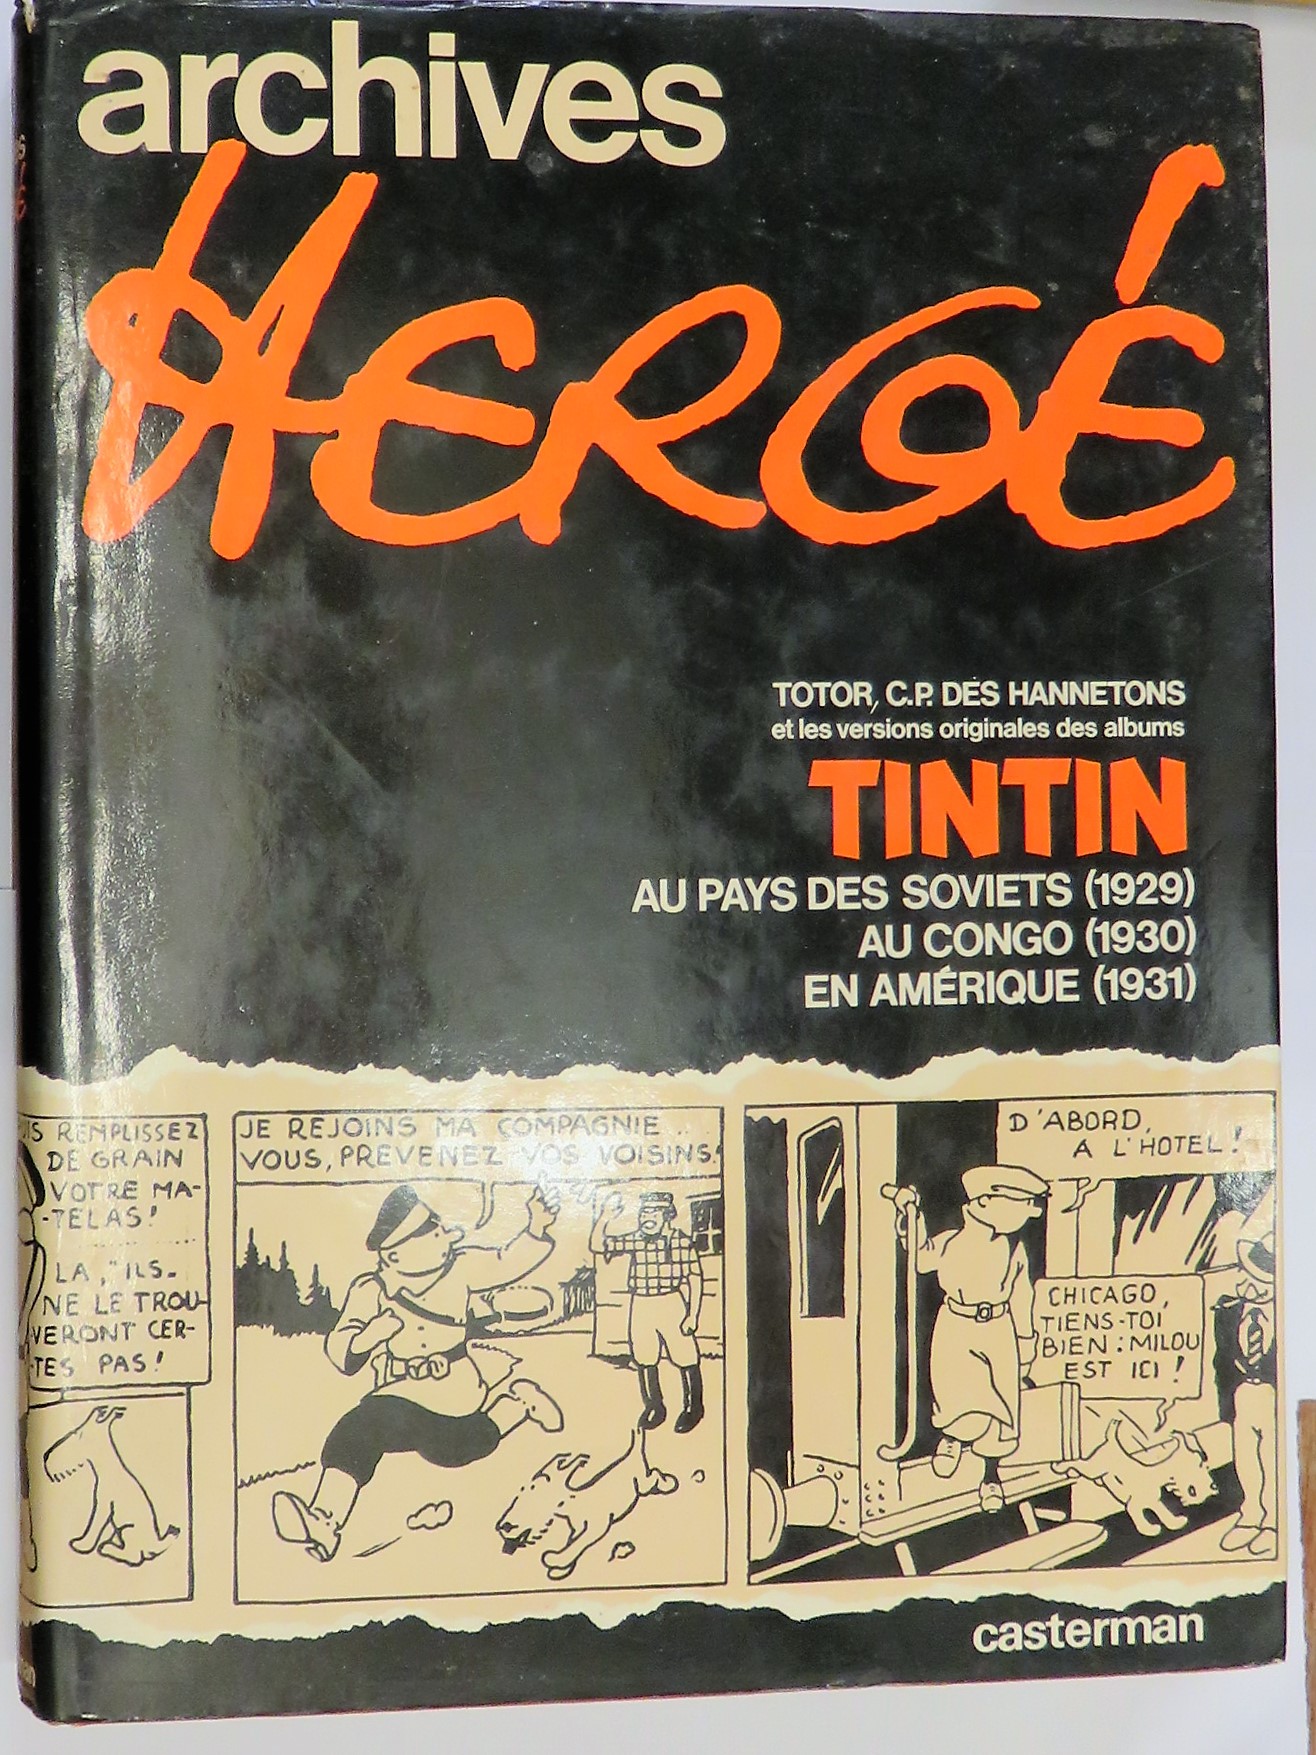 Archives Herge Totor, C.P. Des Hannetons et les Versions Originales des Albums Tintin au pays des Soviets (1929) au Congo (1930) en Amerique (1931)